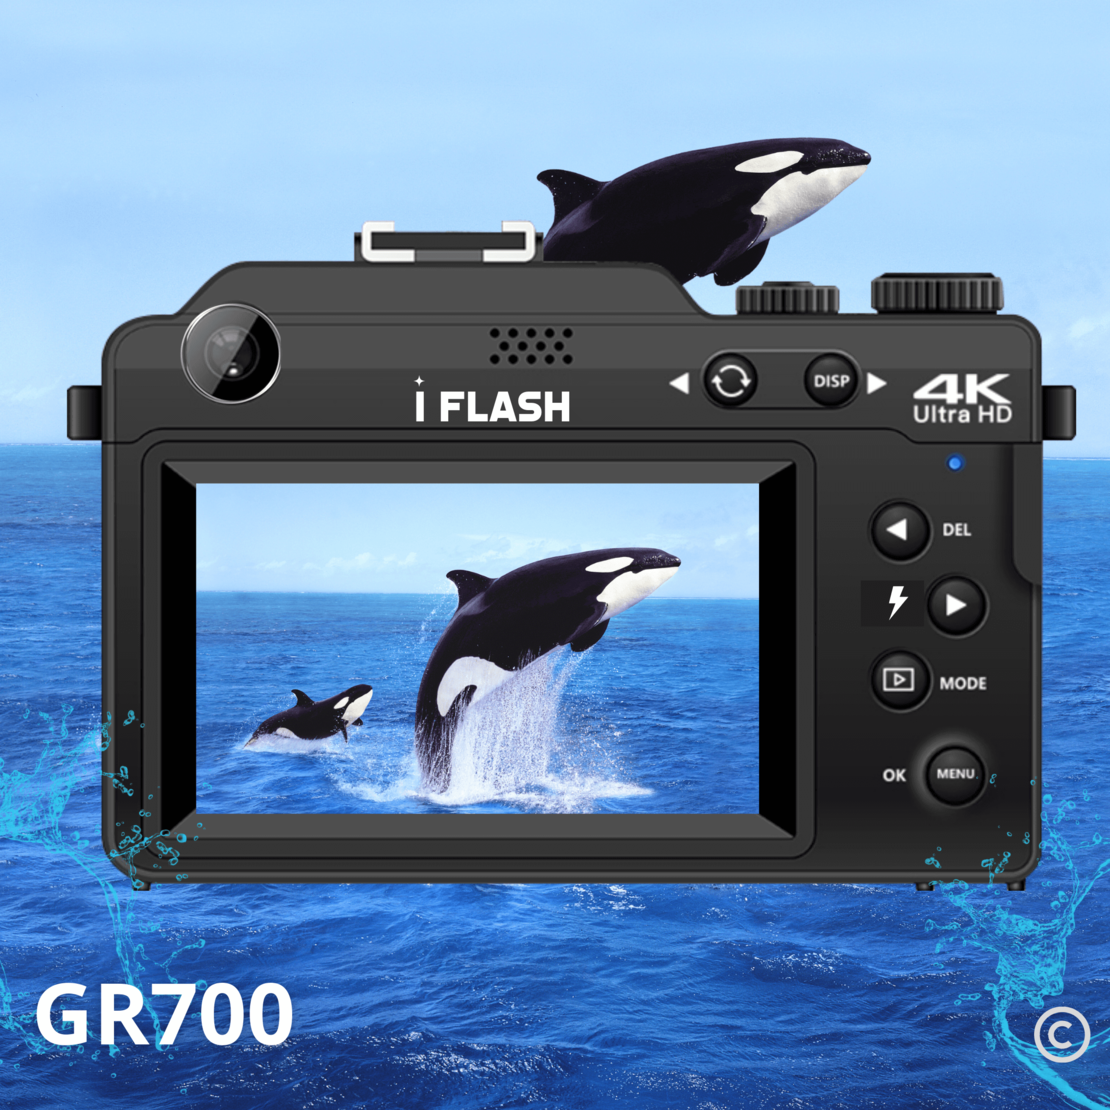 מצלמת I FLASH GR700 המתקדמת ביותר בקטגוריה